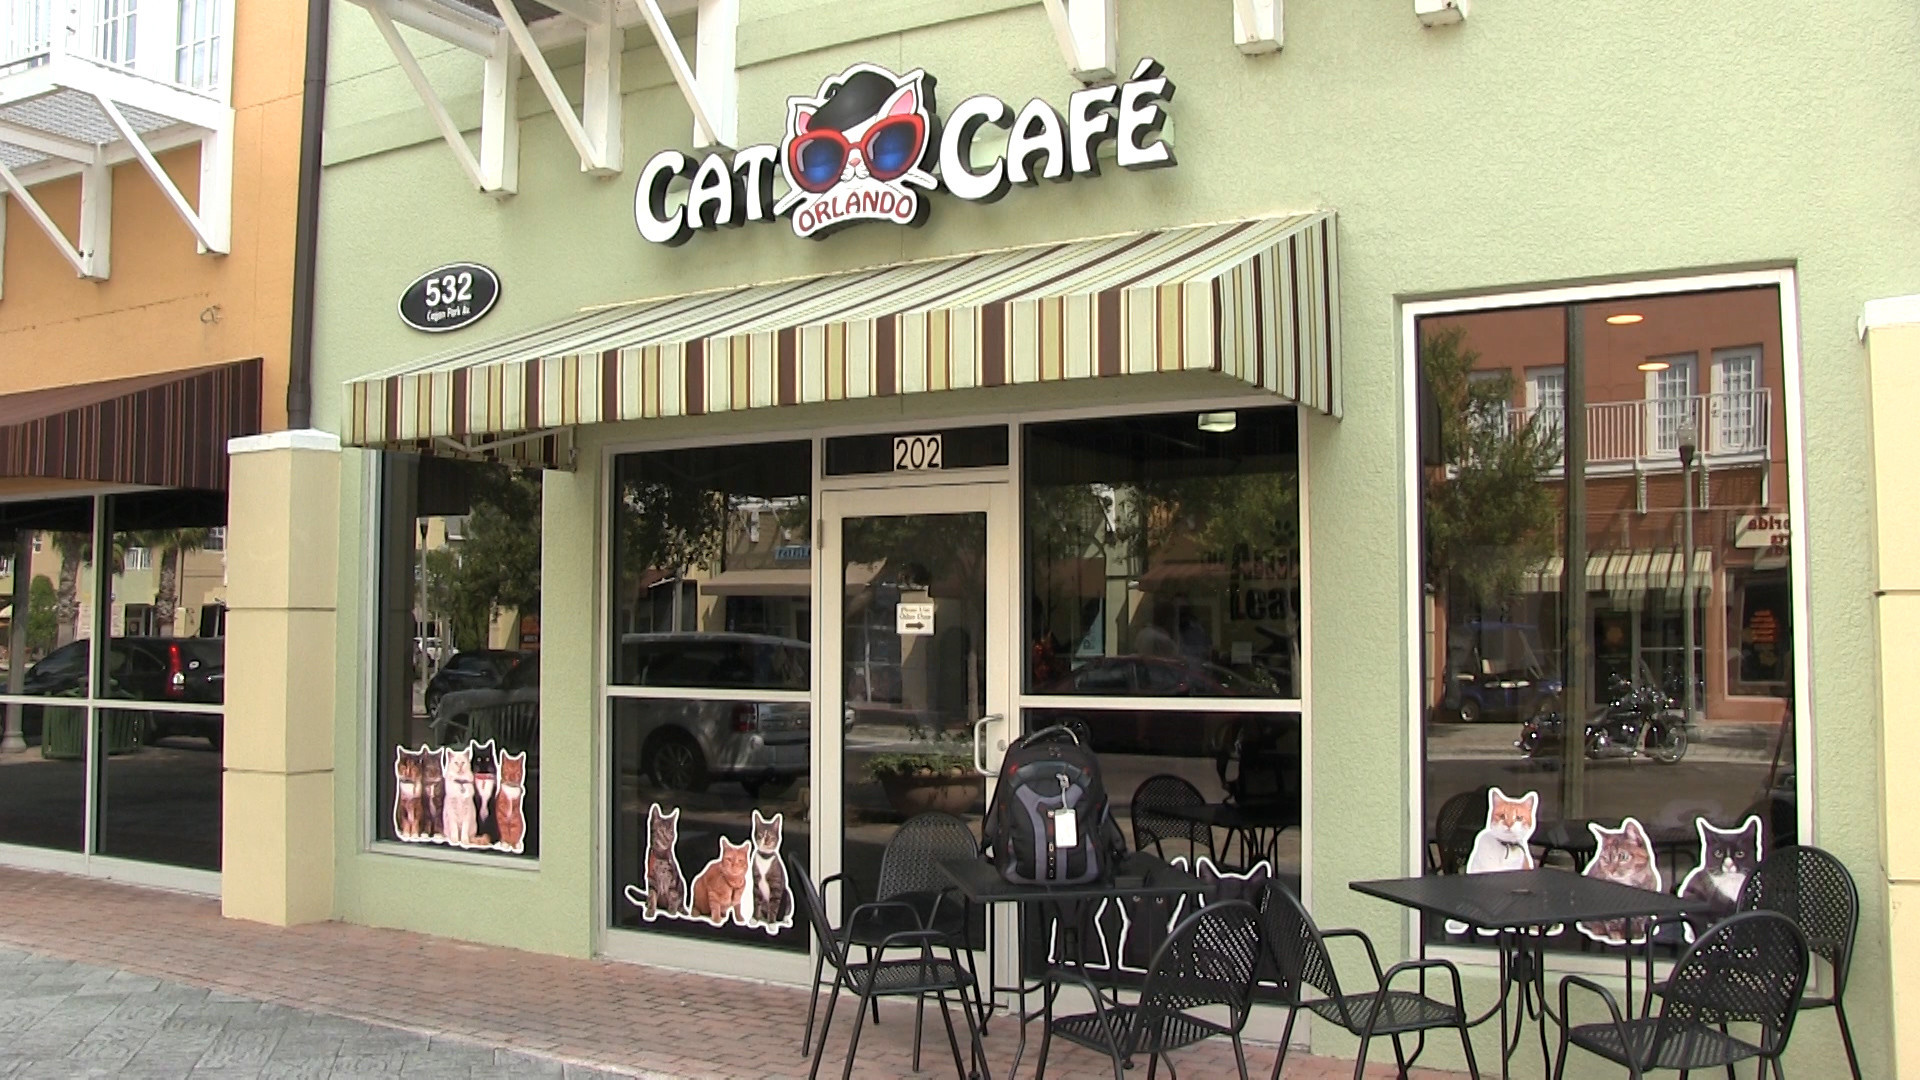 Cat café opens near Orlando Orlando Sentinel